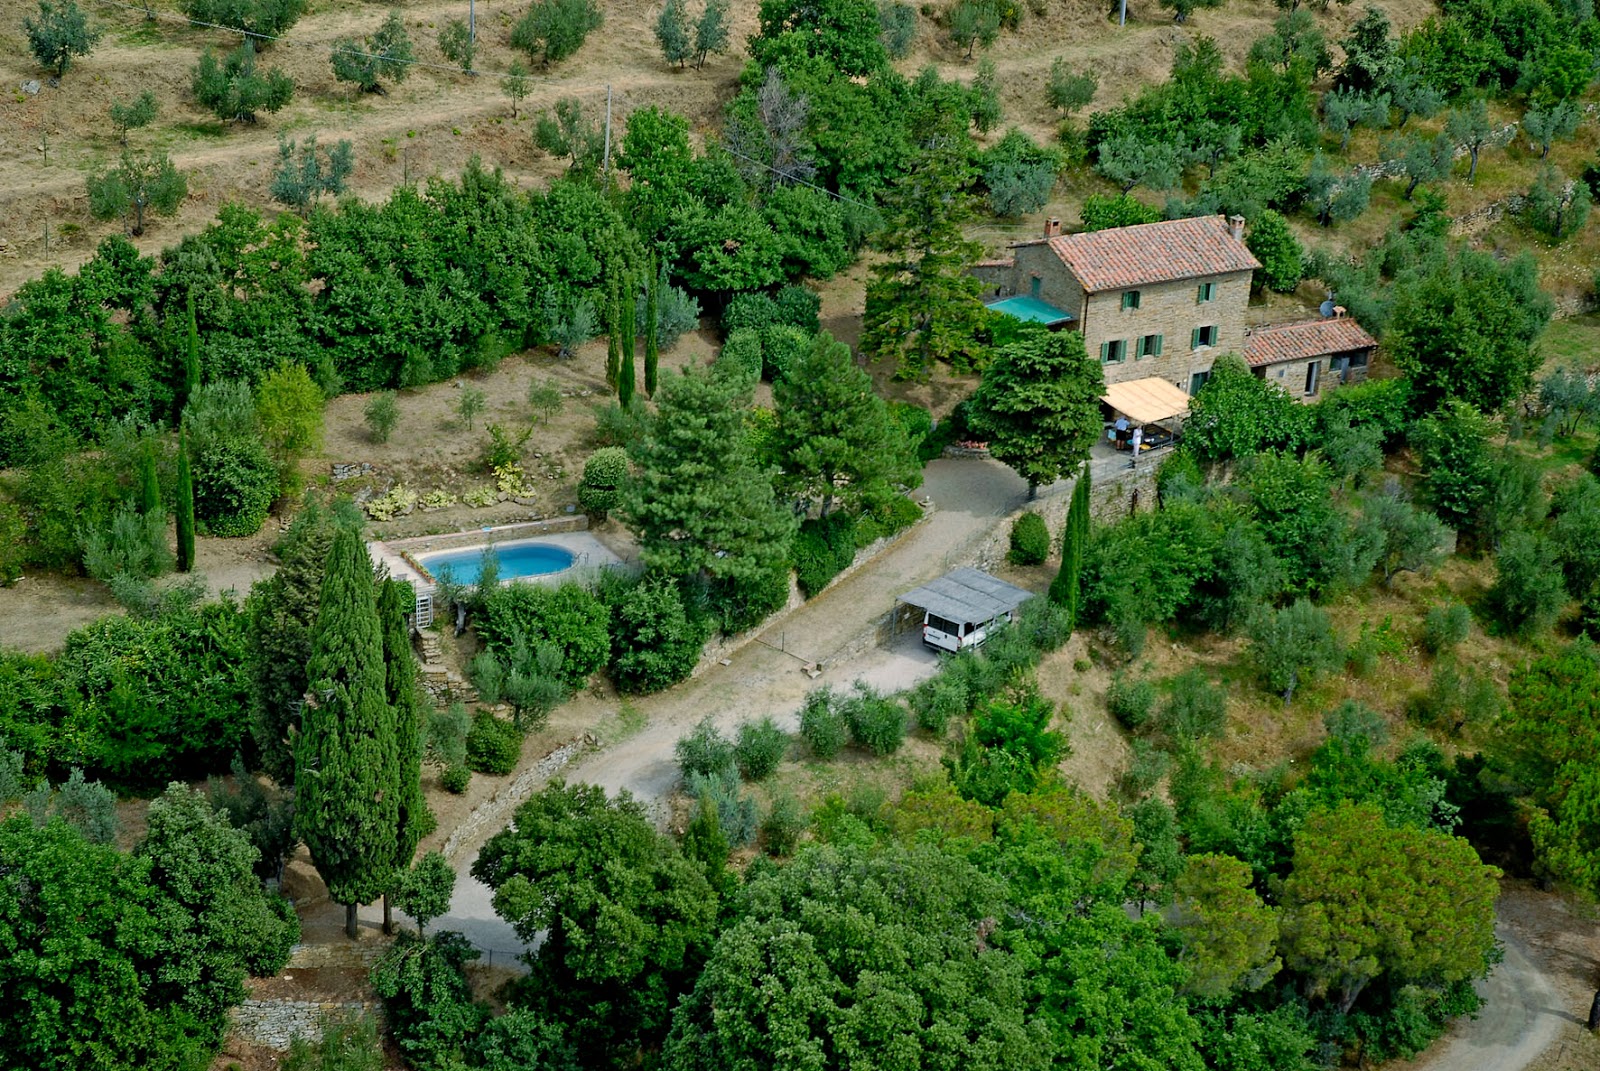 Casa di Nello Ferienhaus in Italien